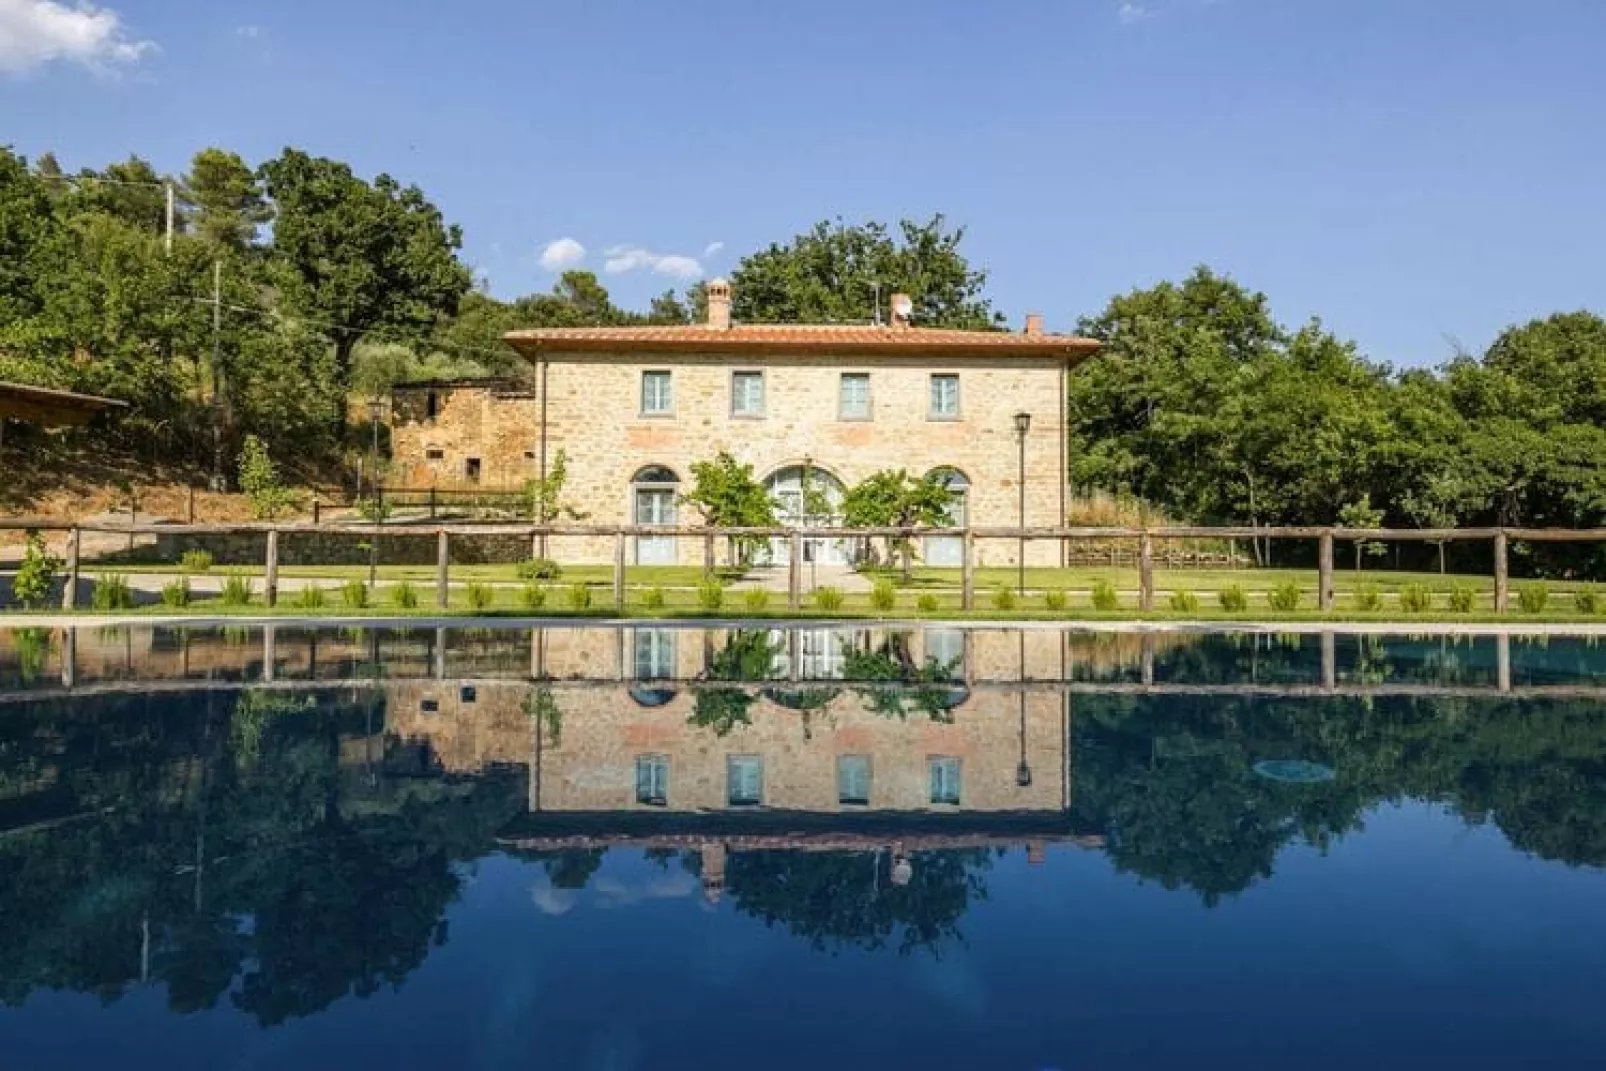 Holiday home Villa Mezzavia, Castiglion Fiorentino-Villa Mezzavia, ca. 290 qm, für 11 Pers.-Zwembad